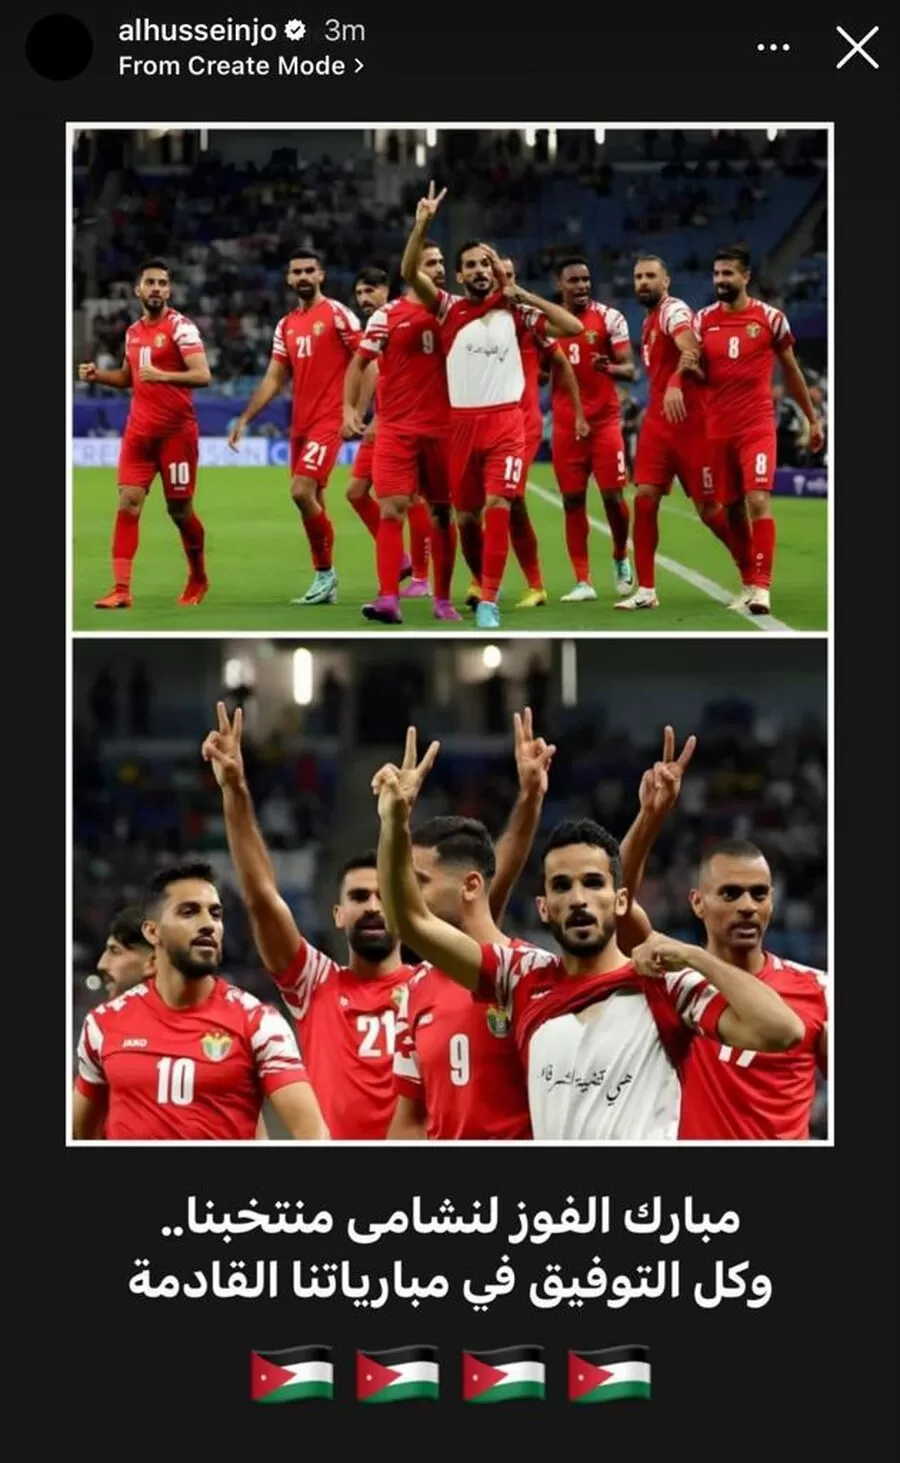 مدار الساعة,أخبار الأردن,اخبار الاردن,ولي العهد,الحسين بن عبدالله الثاني,كأس آسيا,المنتخب الوطني